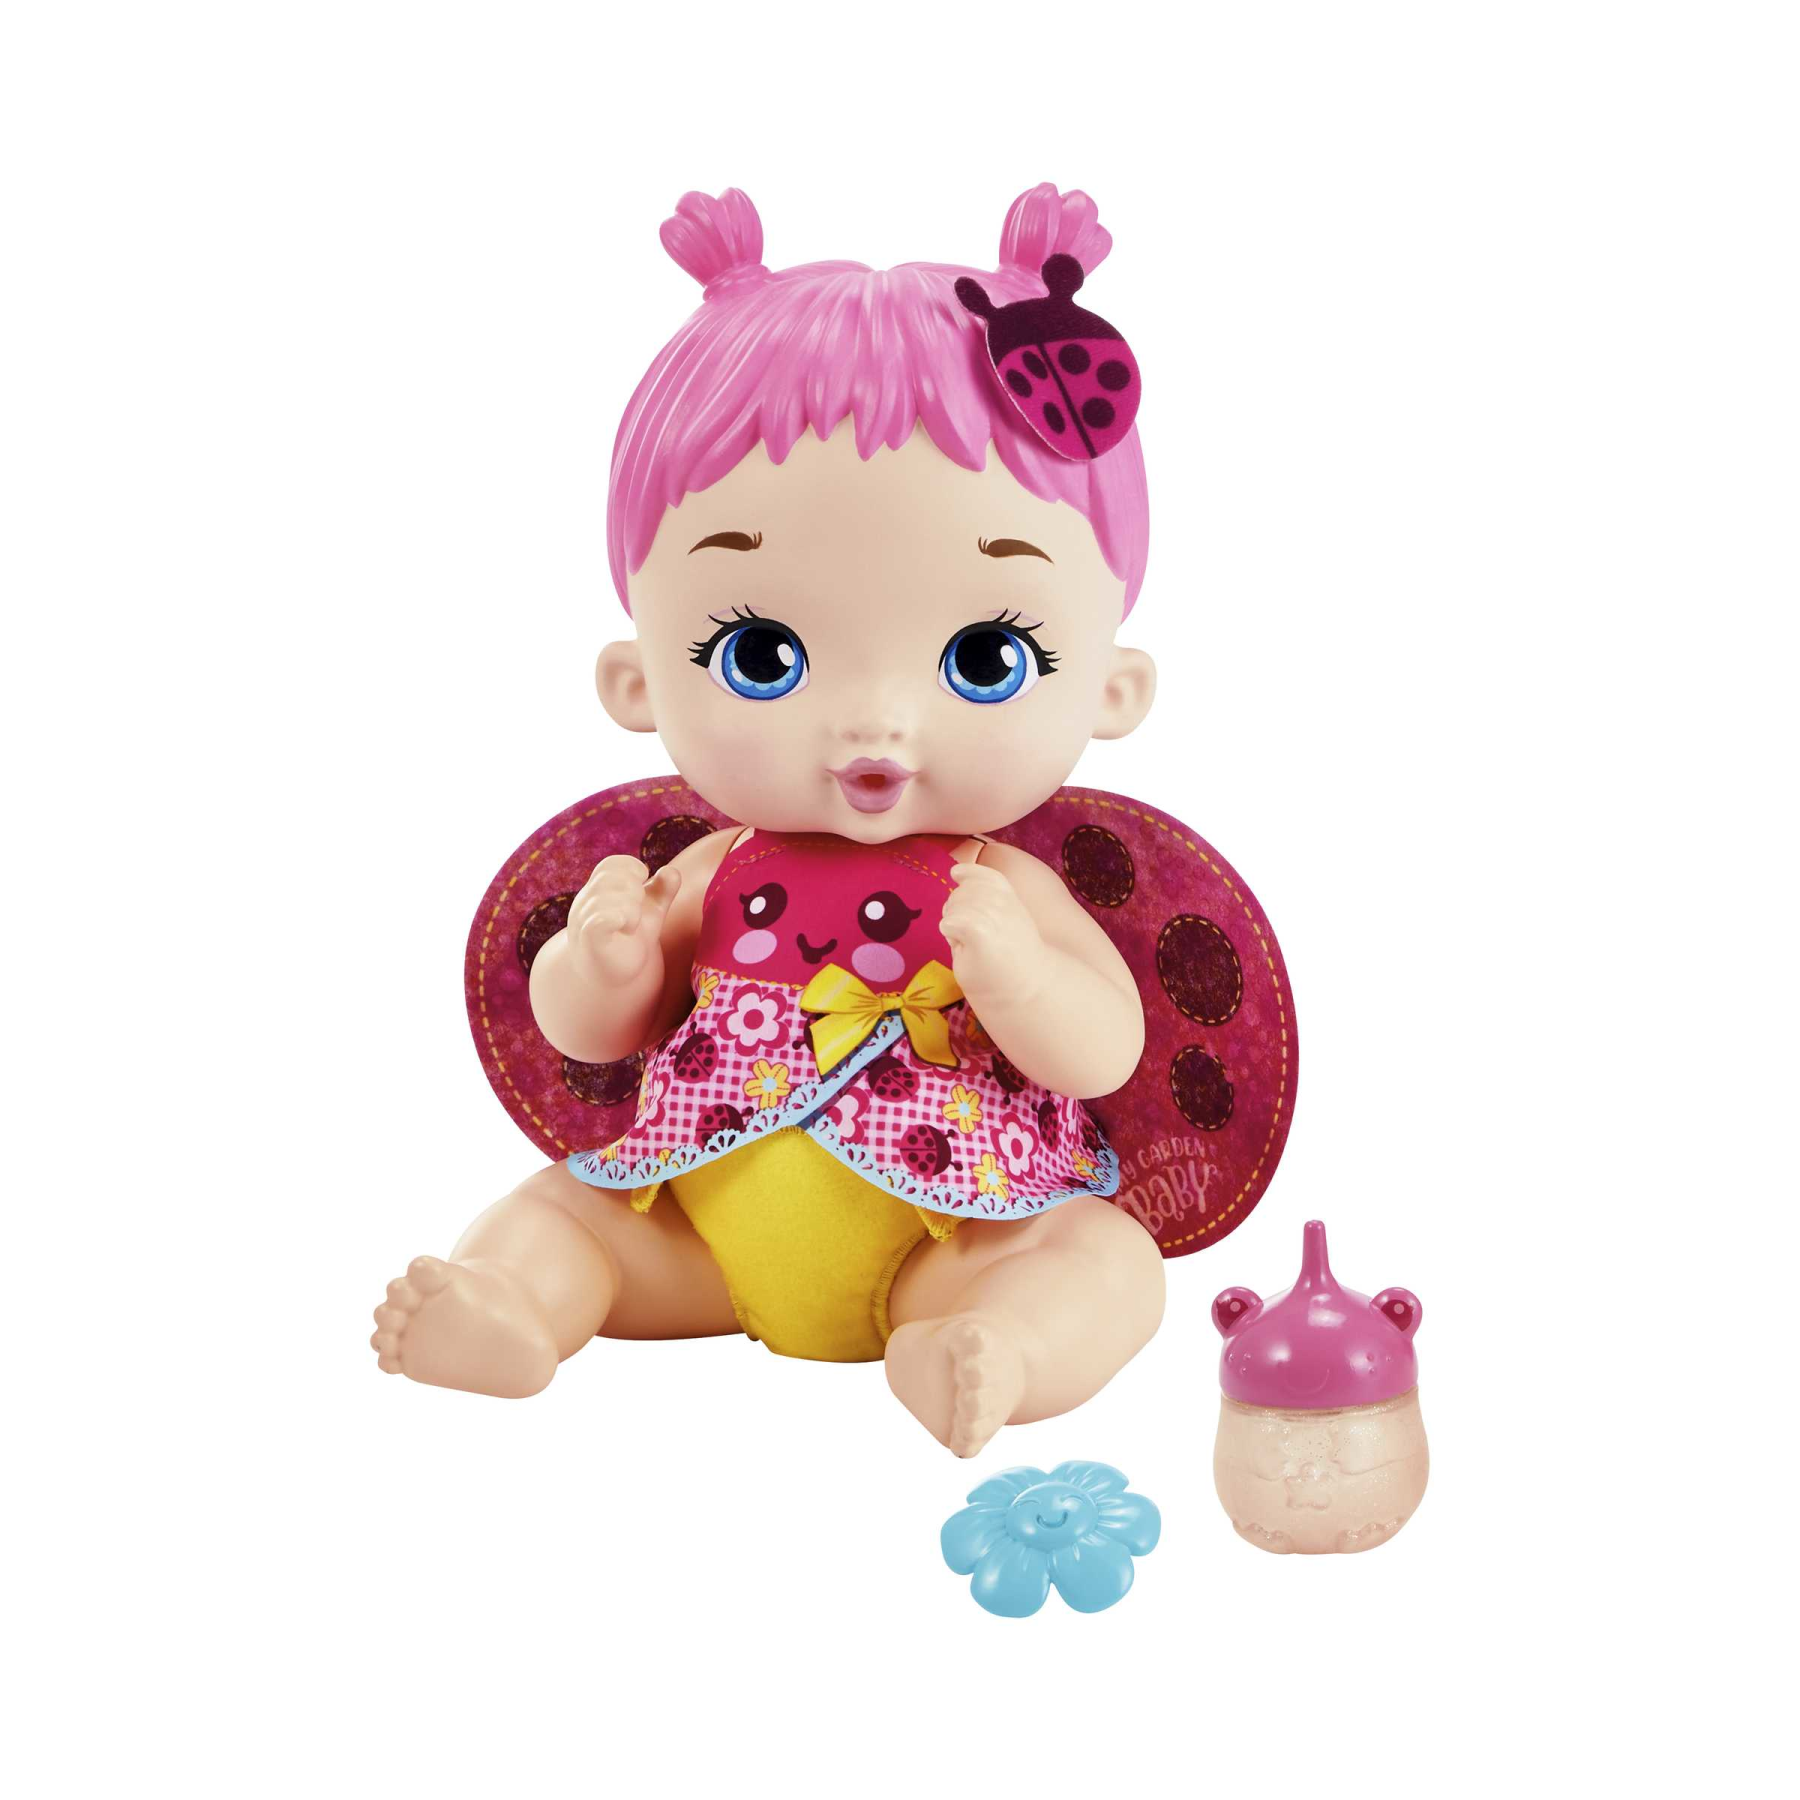 My garden baby - bambola junior coccinella con ali soffici e dolce profumo floreale, con un pannolino riutilizzabile, biberon e accessori, giocattolo per bambini, 3+ anni, hmx27 - MY GARDEN BABY